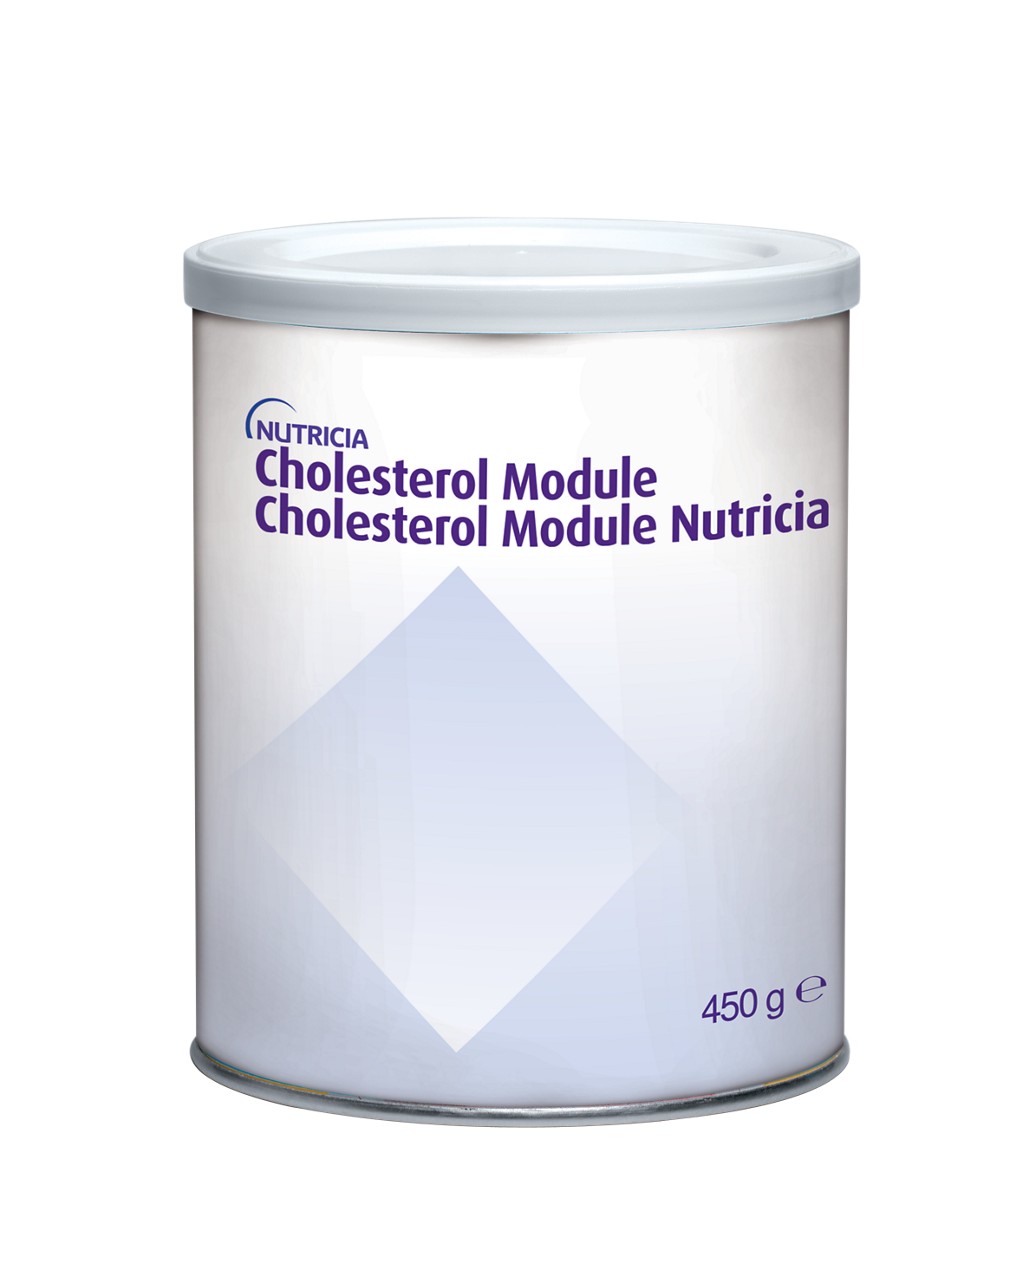 en-GB,Cholesterol Module